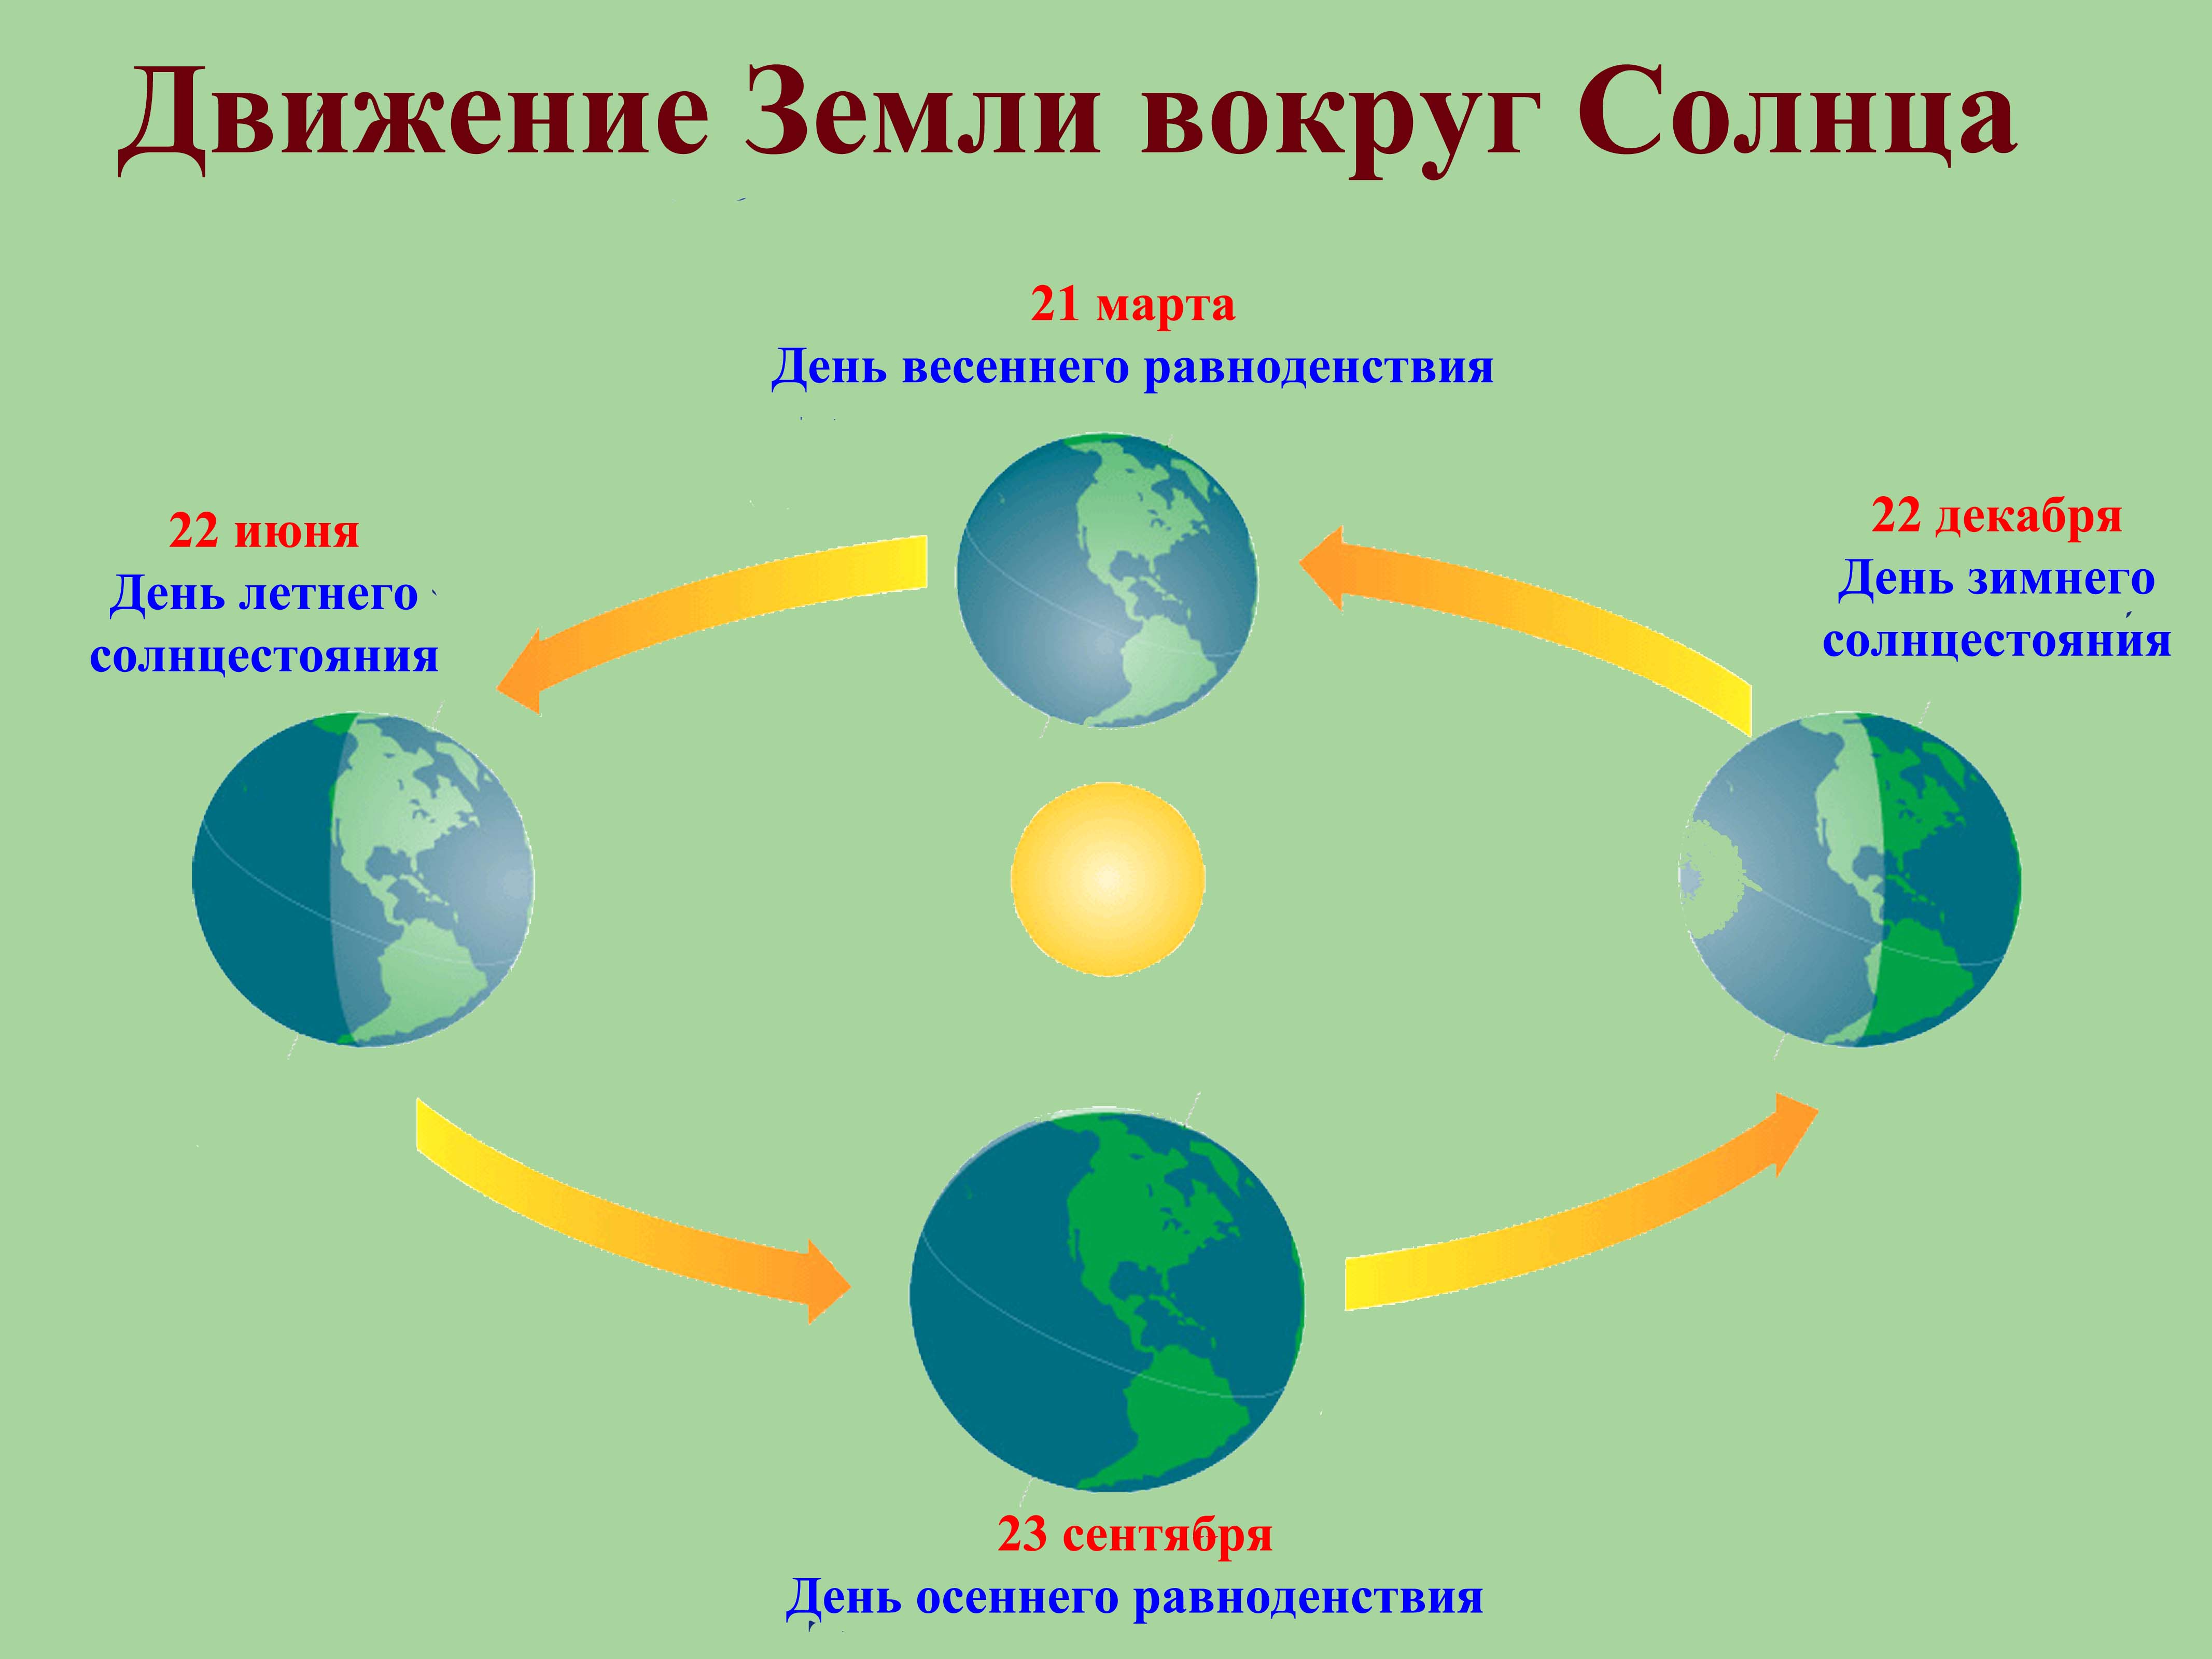 Тест вращение земли 5 класс. Схема движения планеты земля вокруг солнца. Схема вращения земли вокруг солнца. Годовой цикл земли вокруг солнца. Схема годового вращения земли вокруг солнца.